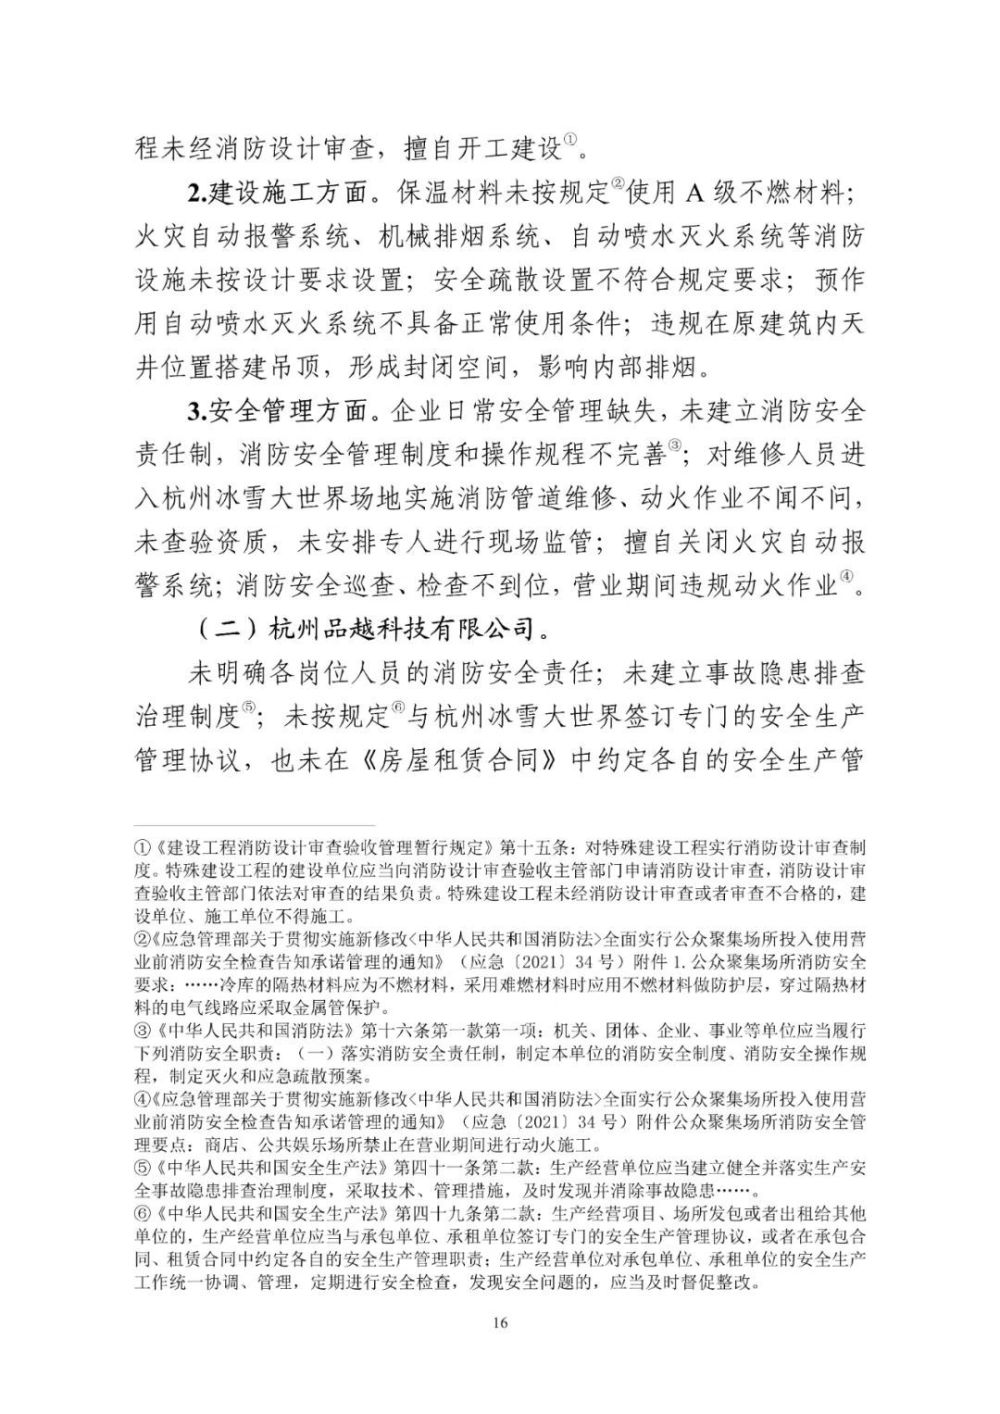 8人被刑拘！杭州冰雪大世界“6·9”较大火灾事故调查报告公布